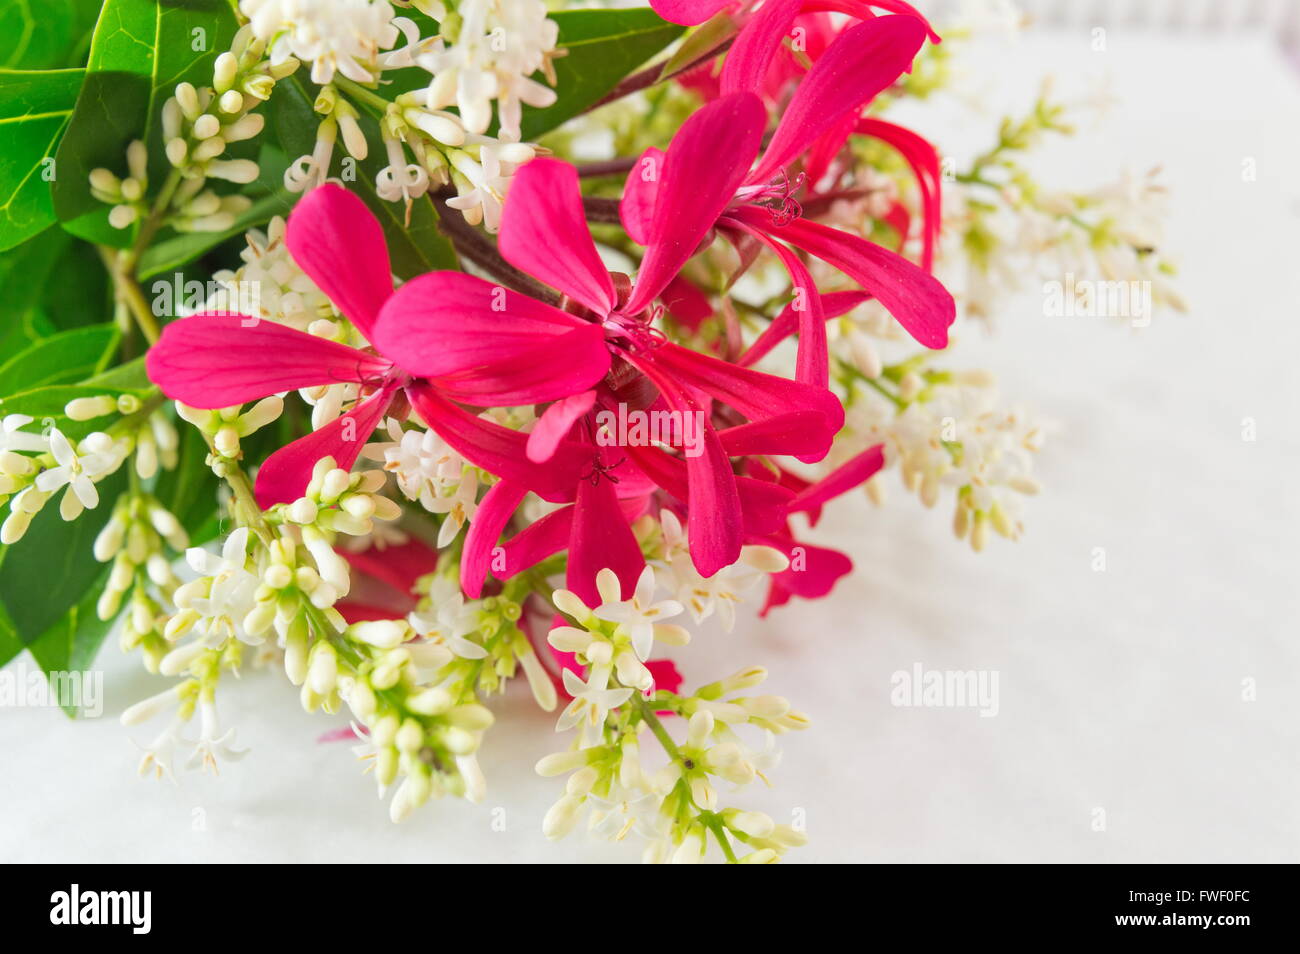 Champ coloré bouquet de fleurs sur fond blanc Banque D'Images